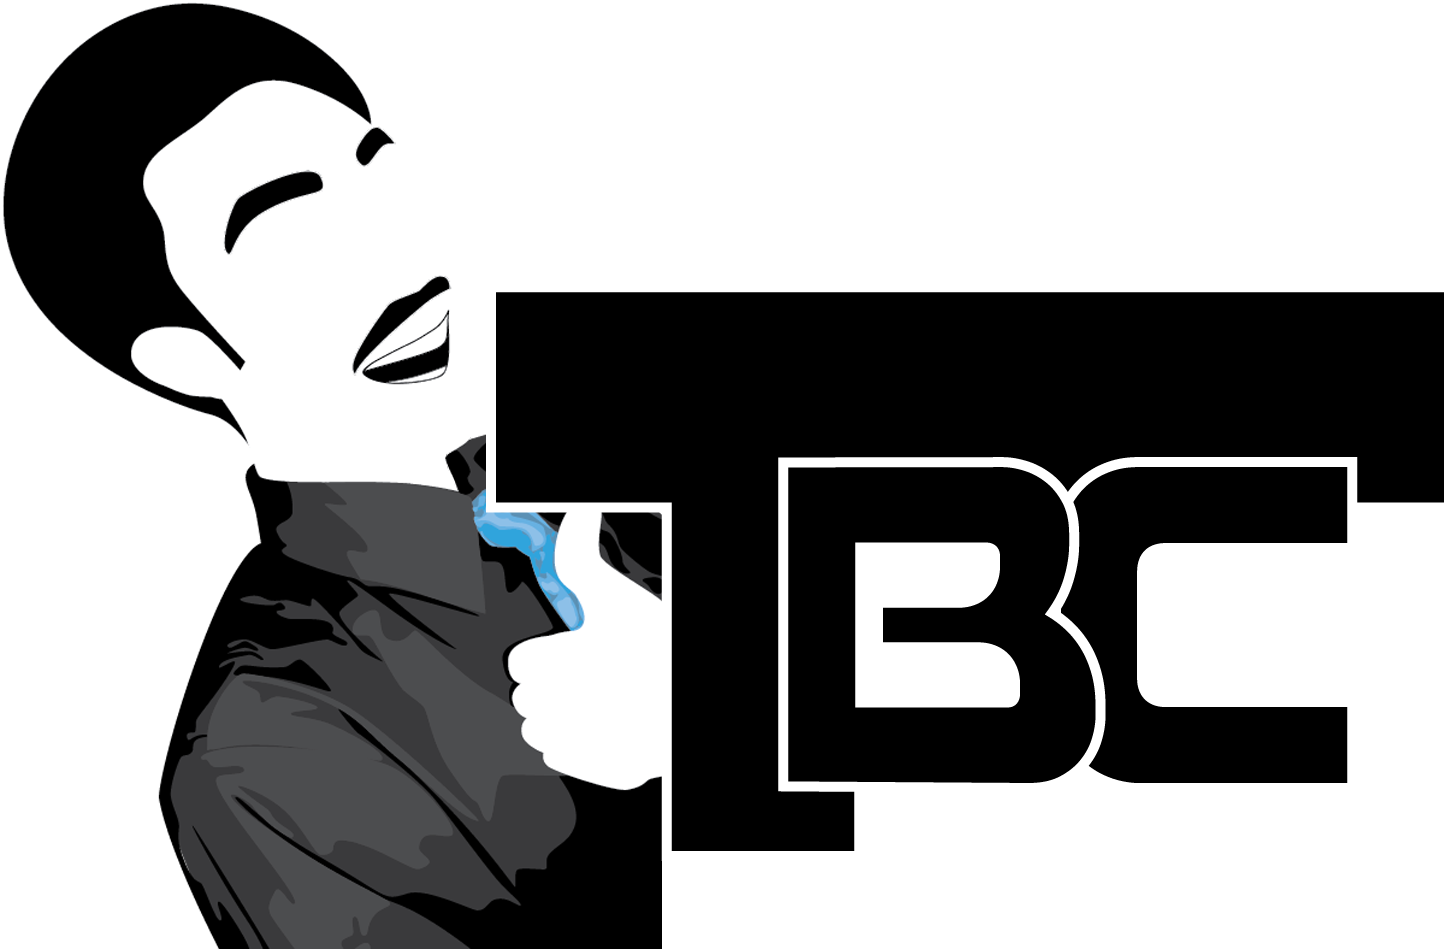 TBC logo